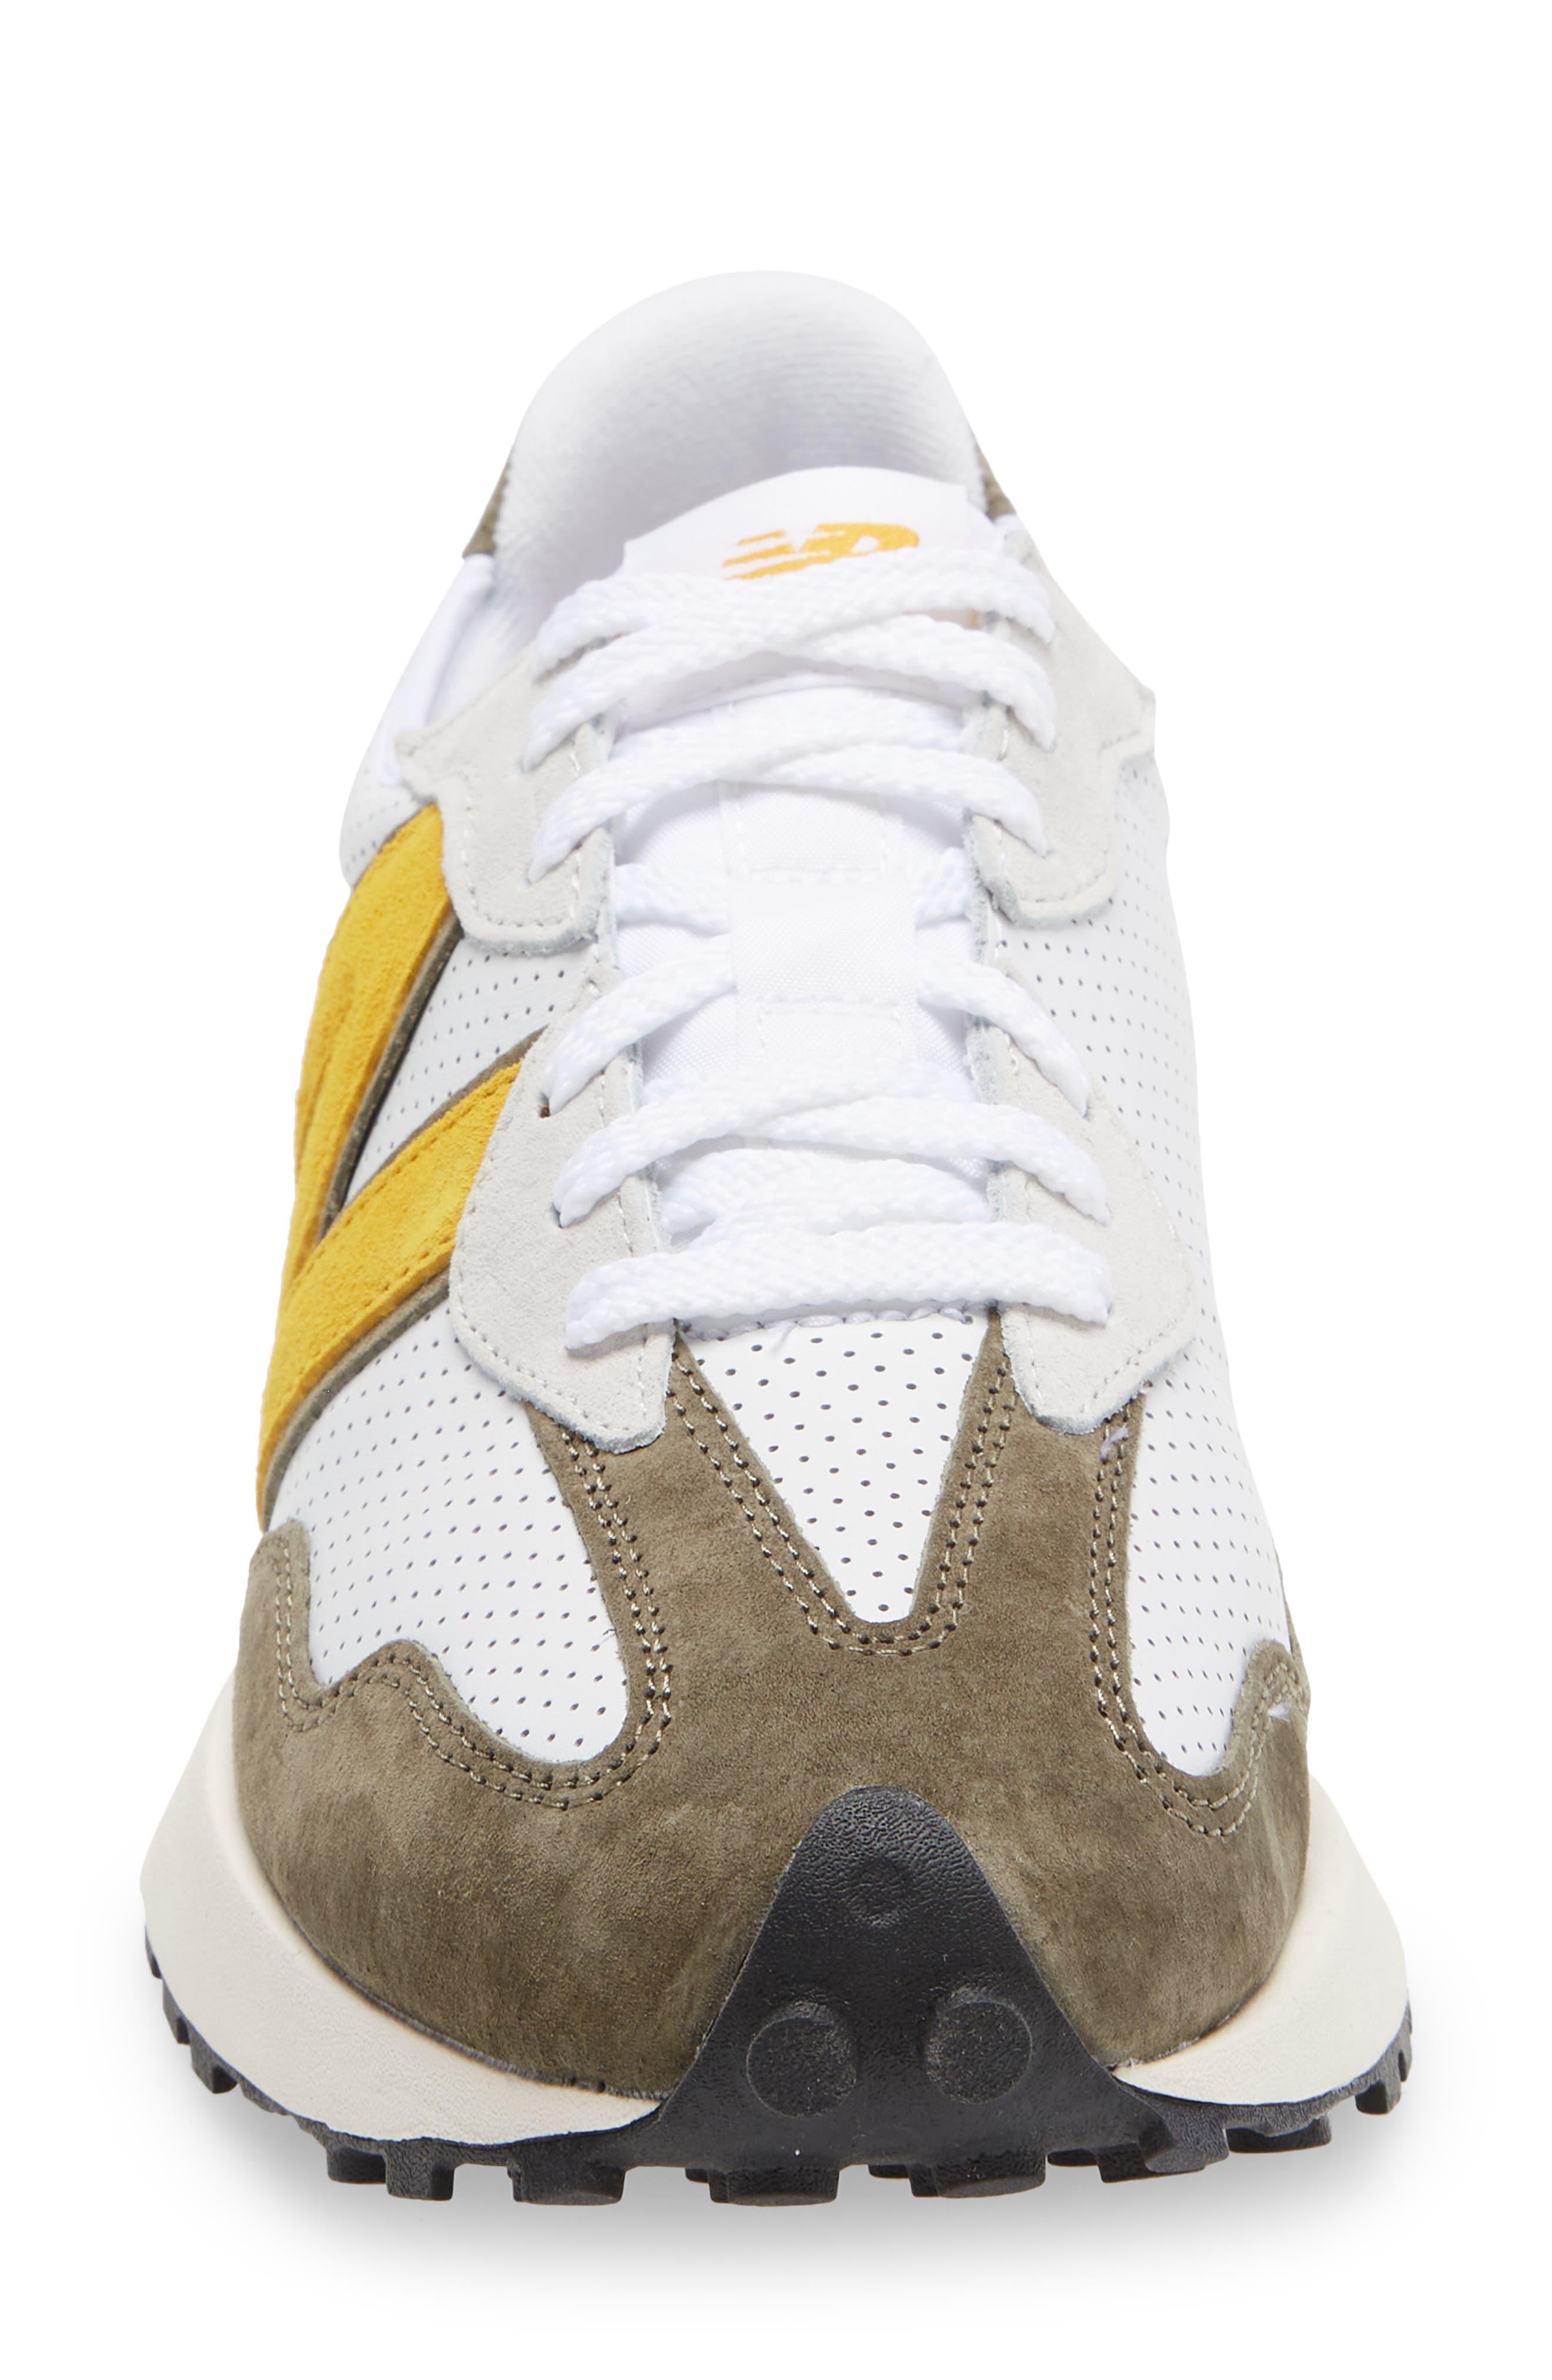 New Balance 327 Sneaker In White/varsity Gold At Nordstrom Rack for Men |  Lyst